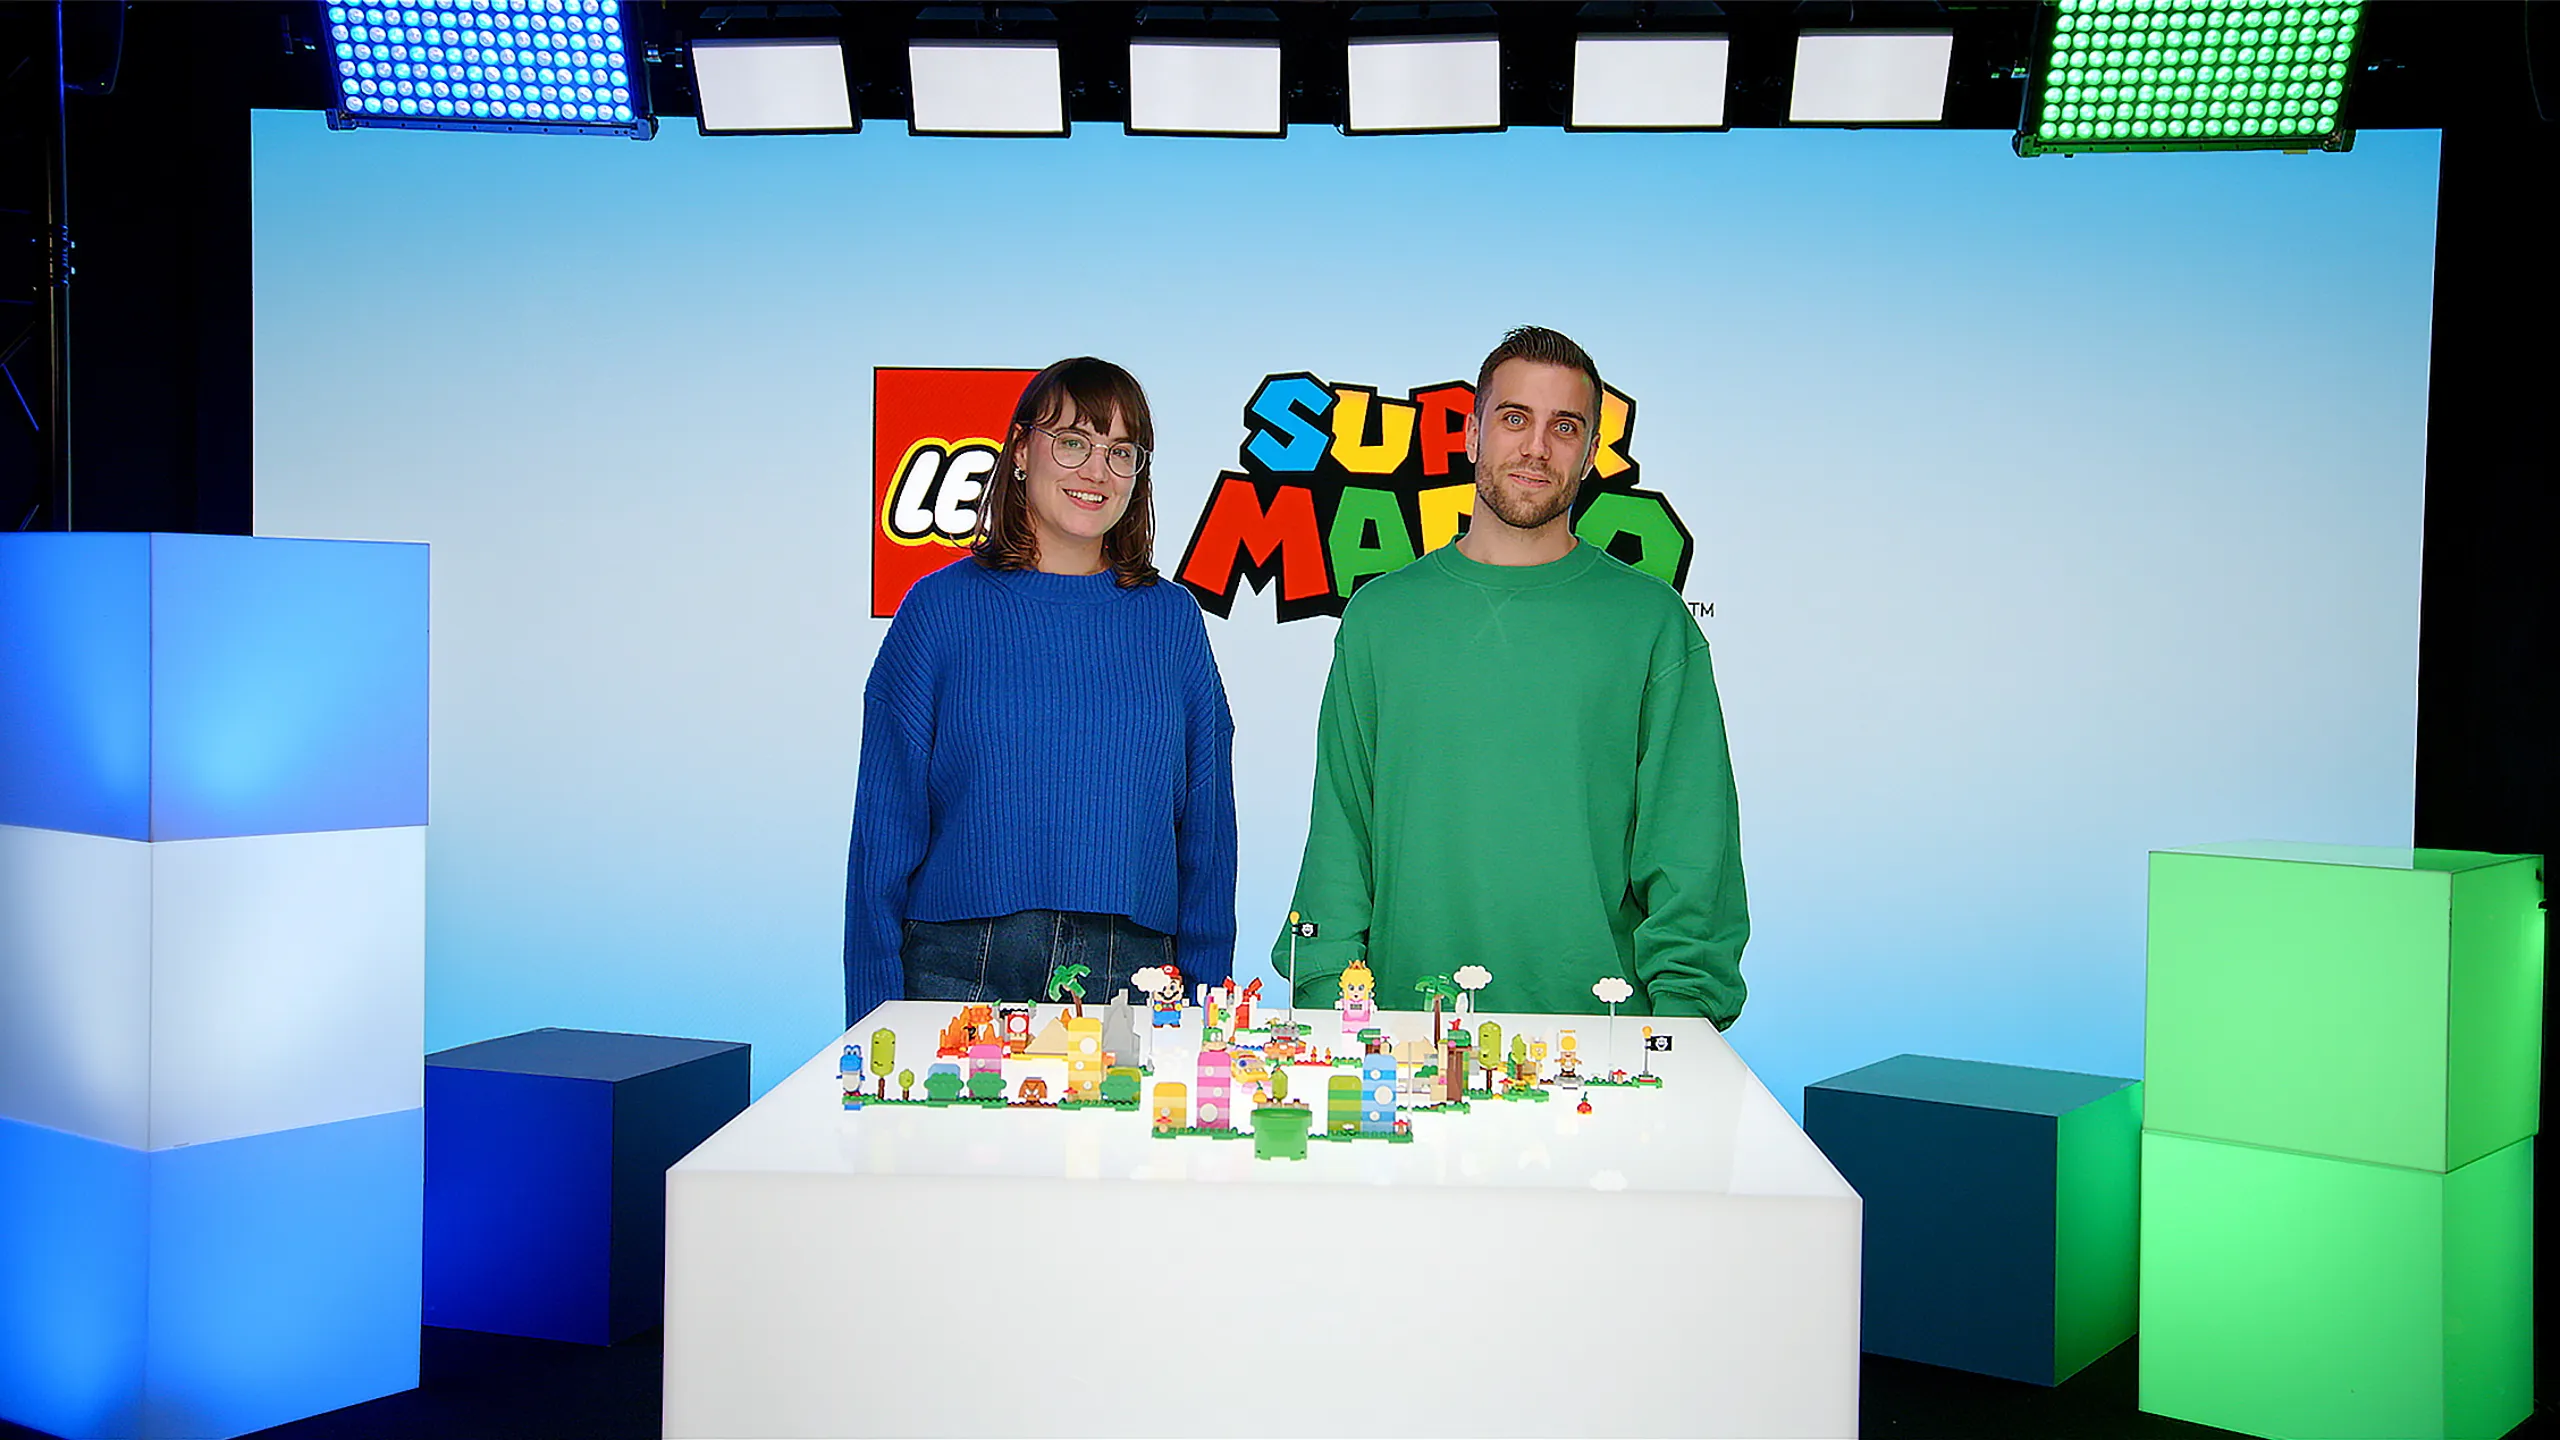 Lego Mario Bros-Set Exp Las Olas Contra El Erizon varios